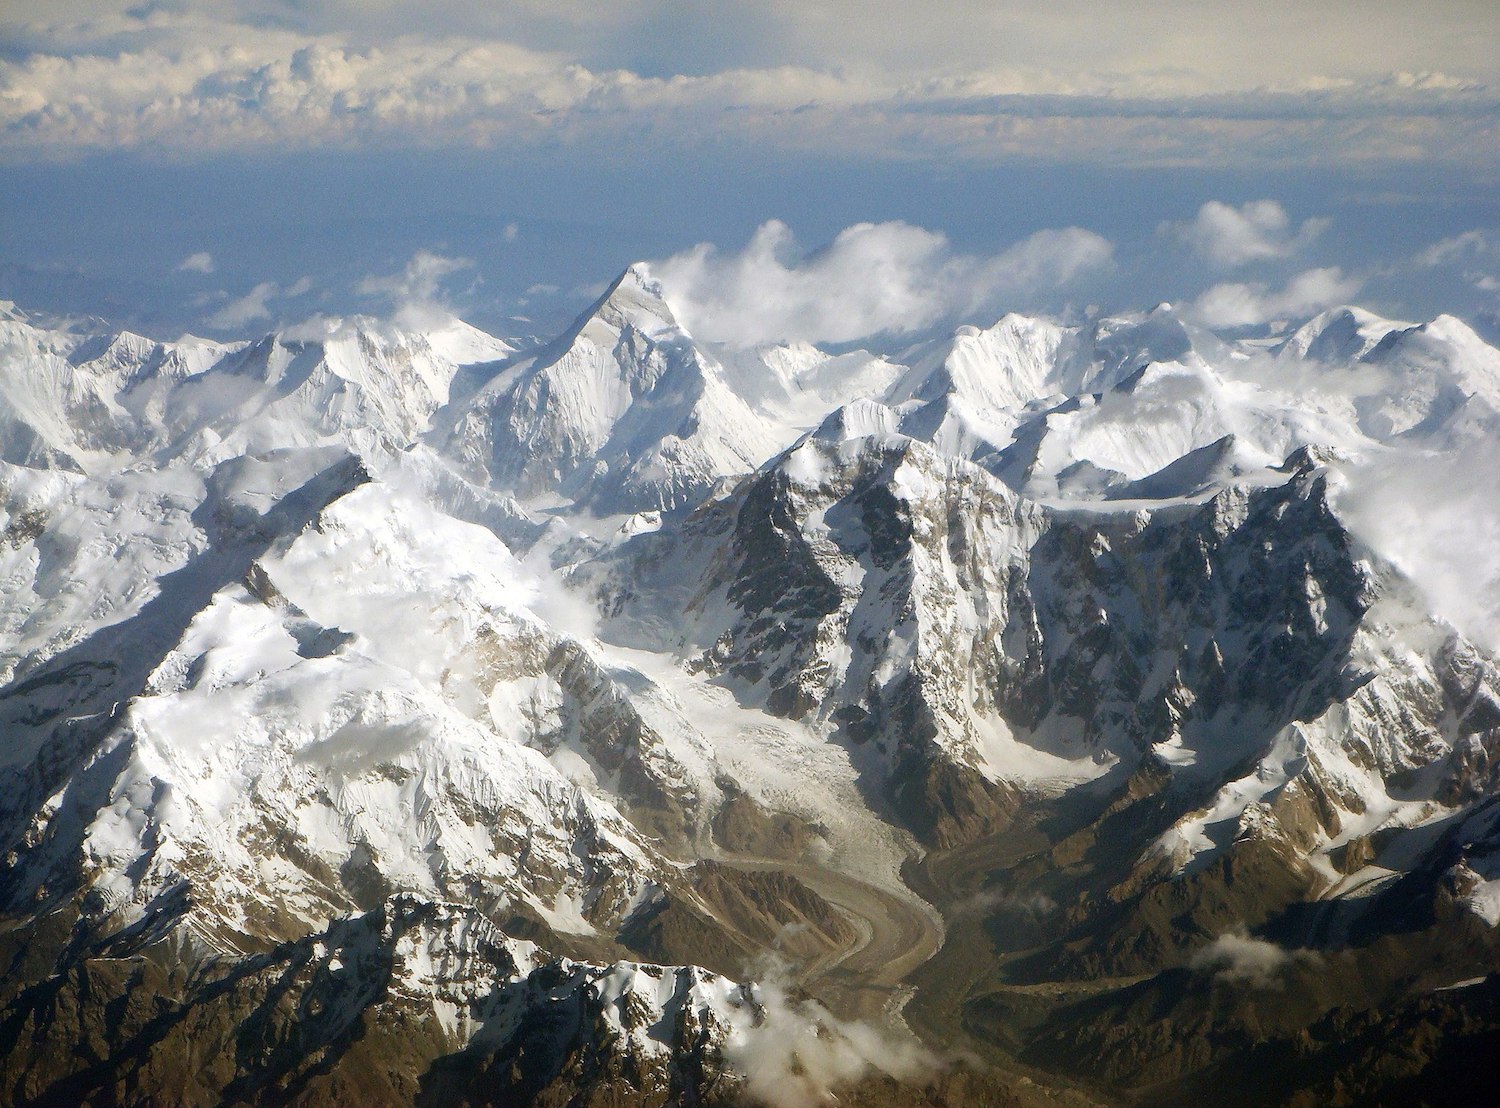 Tian Shen mountan range. Image: Chen Zhao under a CC licence